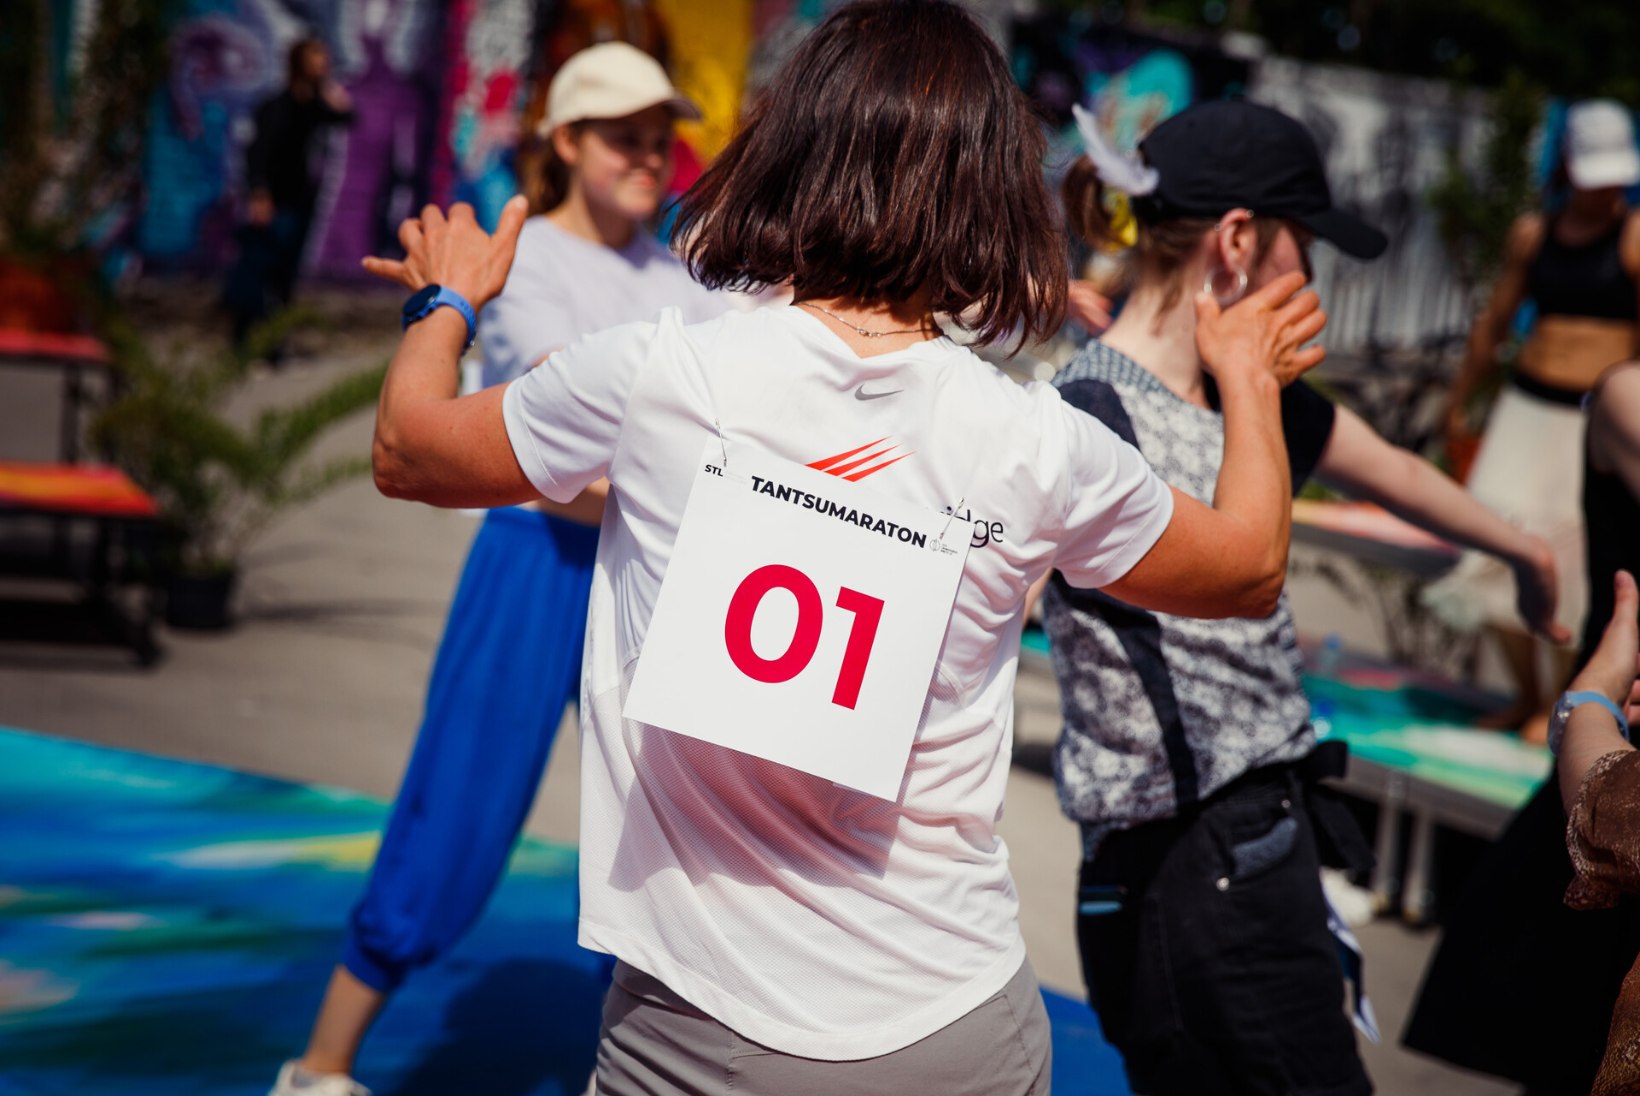 GALERII | Telliskivis toimub heategevuslik 12tunnine Tantsumaraton, millega kogutakse raha Hendra Raua raske lihasatroofia ravi toetamiseks